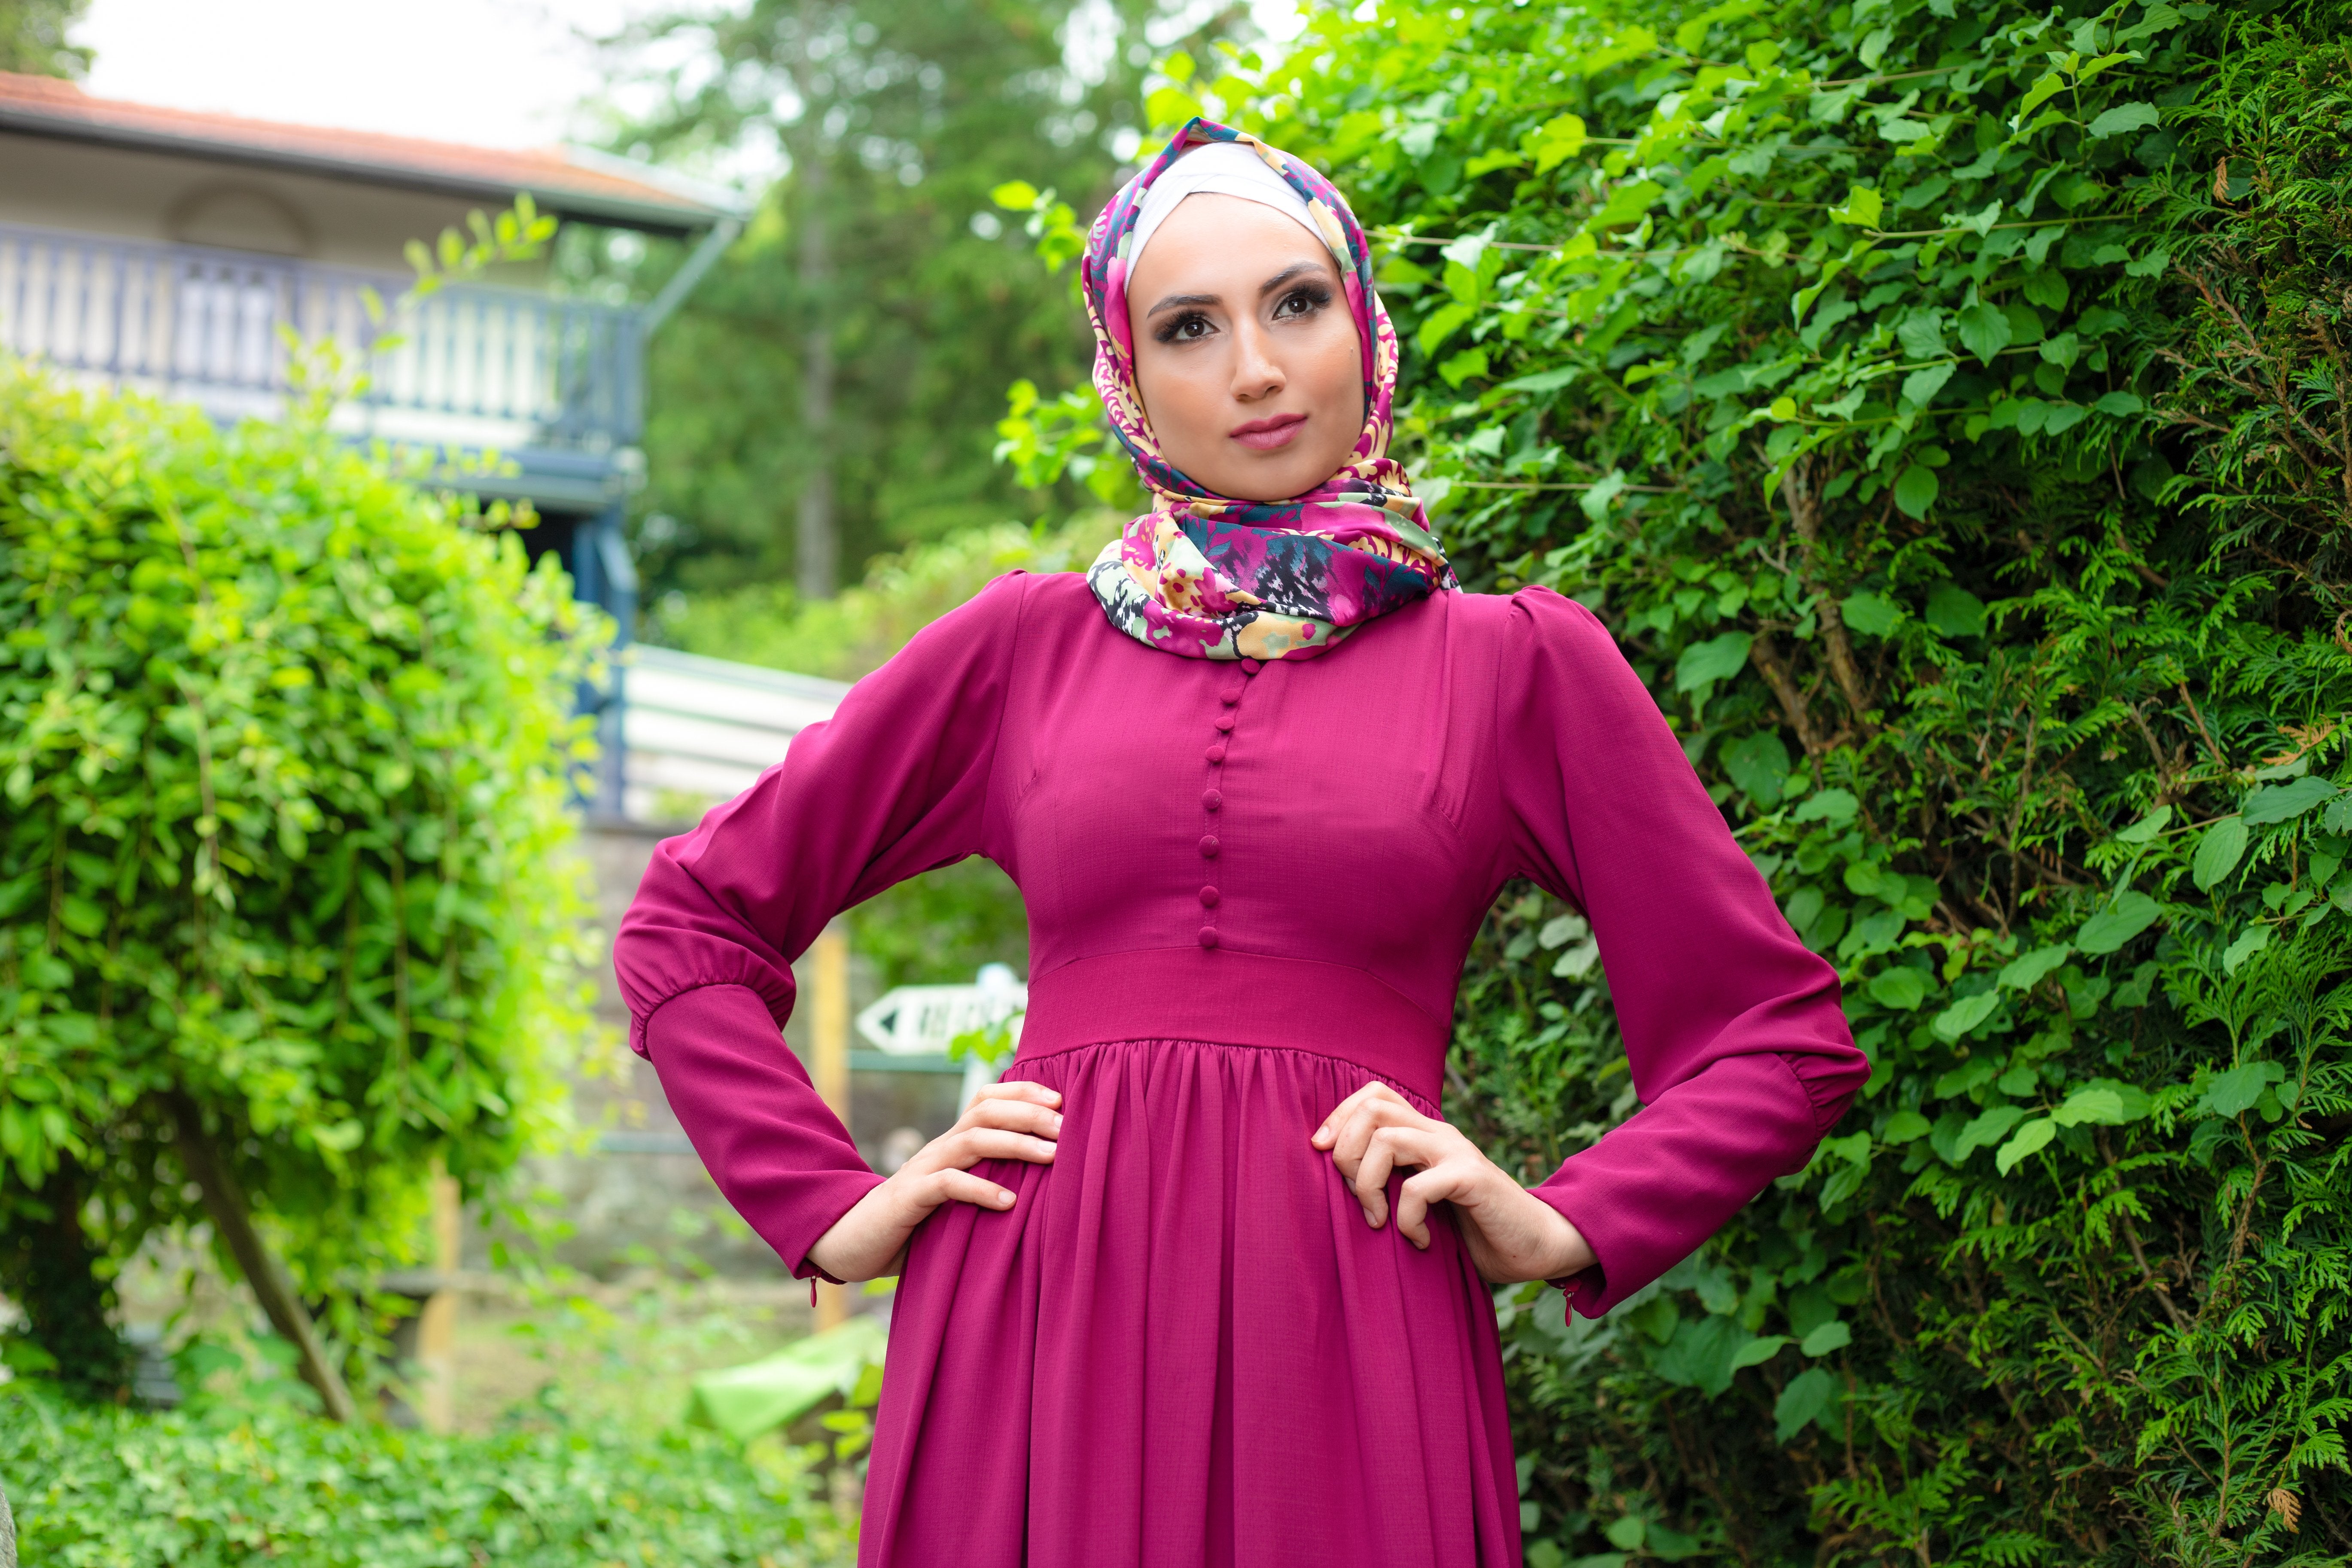 Simple Elegant Dress | Fully Lined | Violet Color